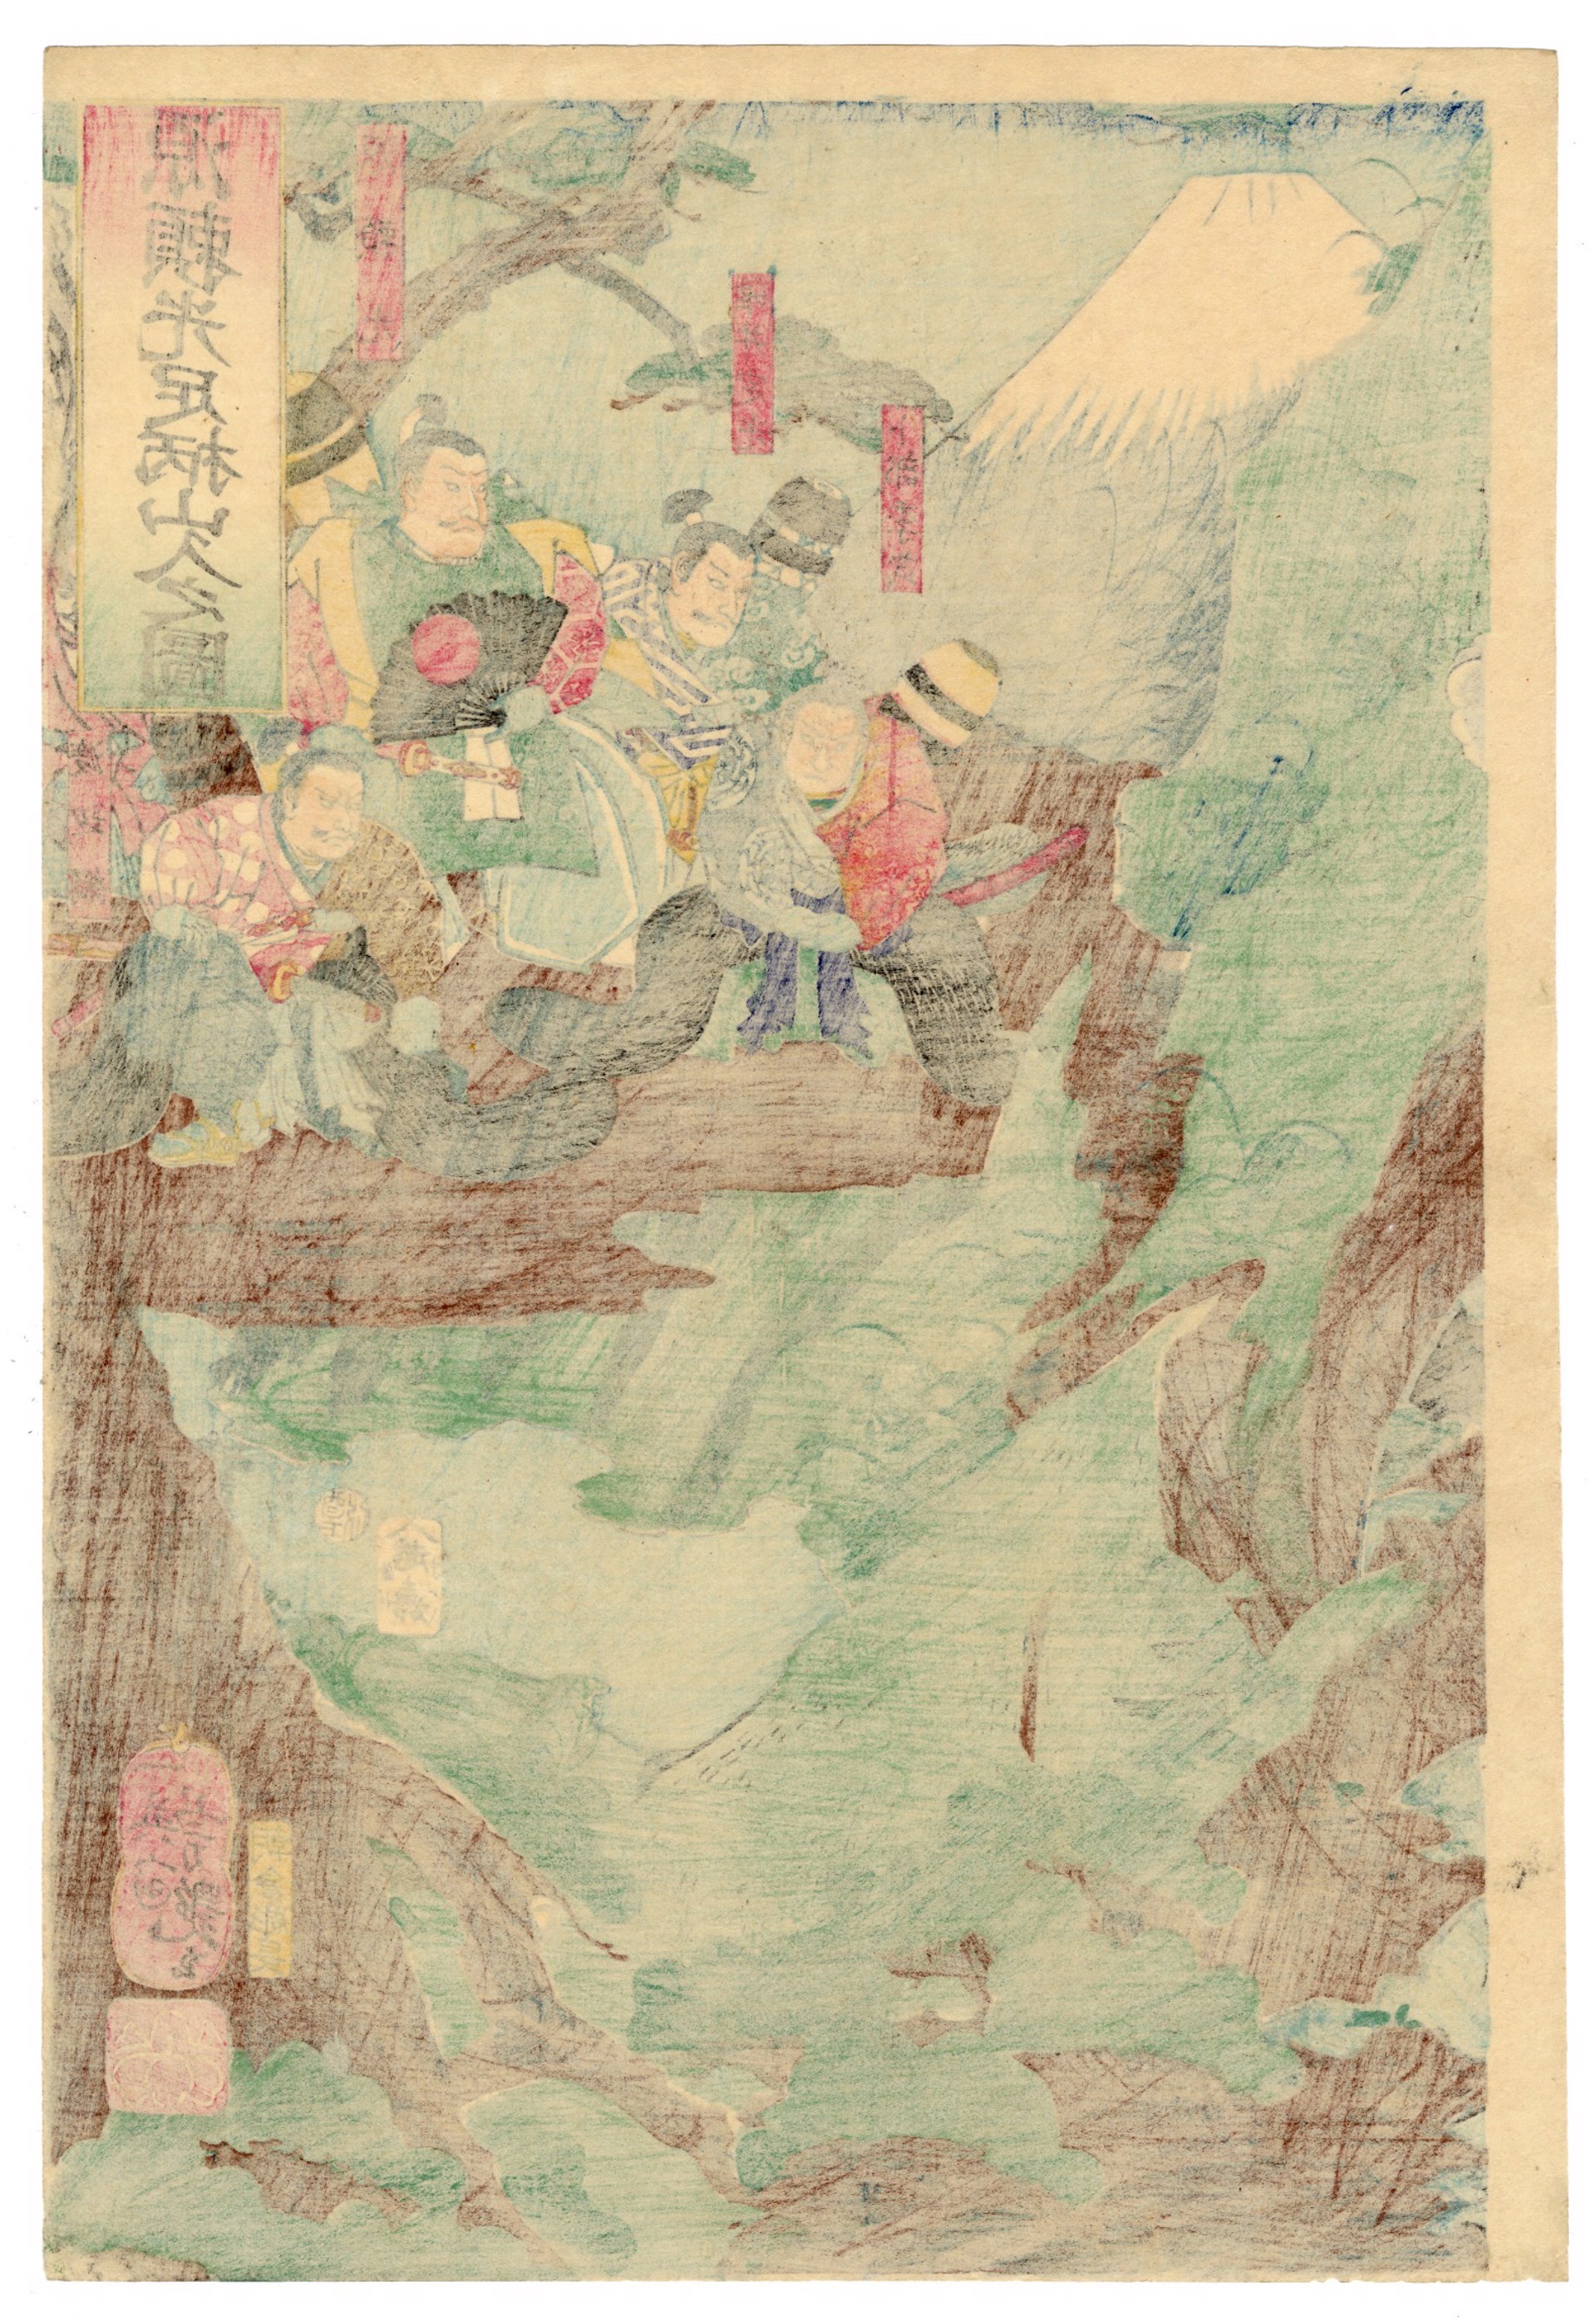 Minamoto no Yorimitsu Encounters Kaidomaru (Kintoki) on Mt. Ashigawa by Yoshitsuya